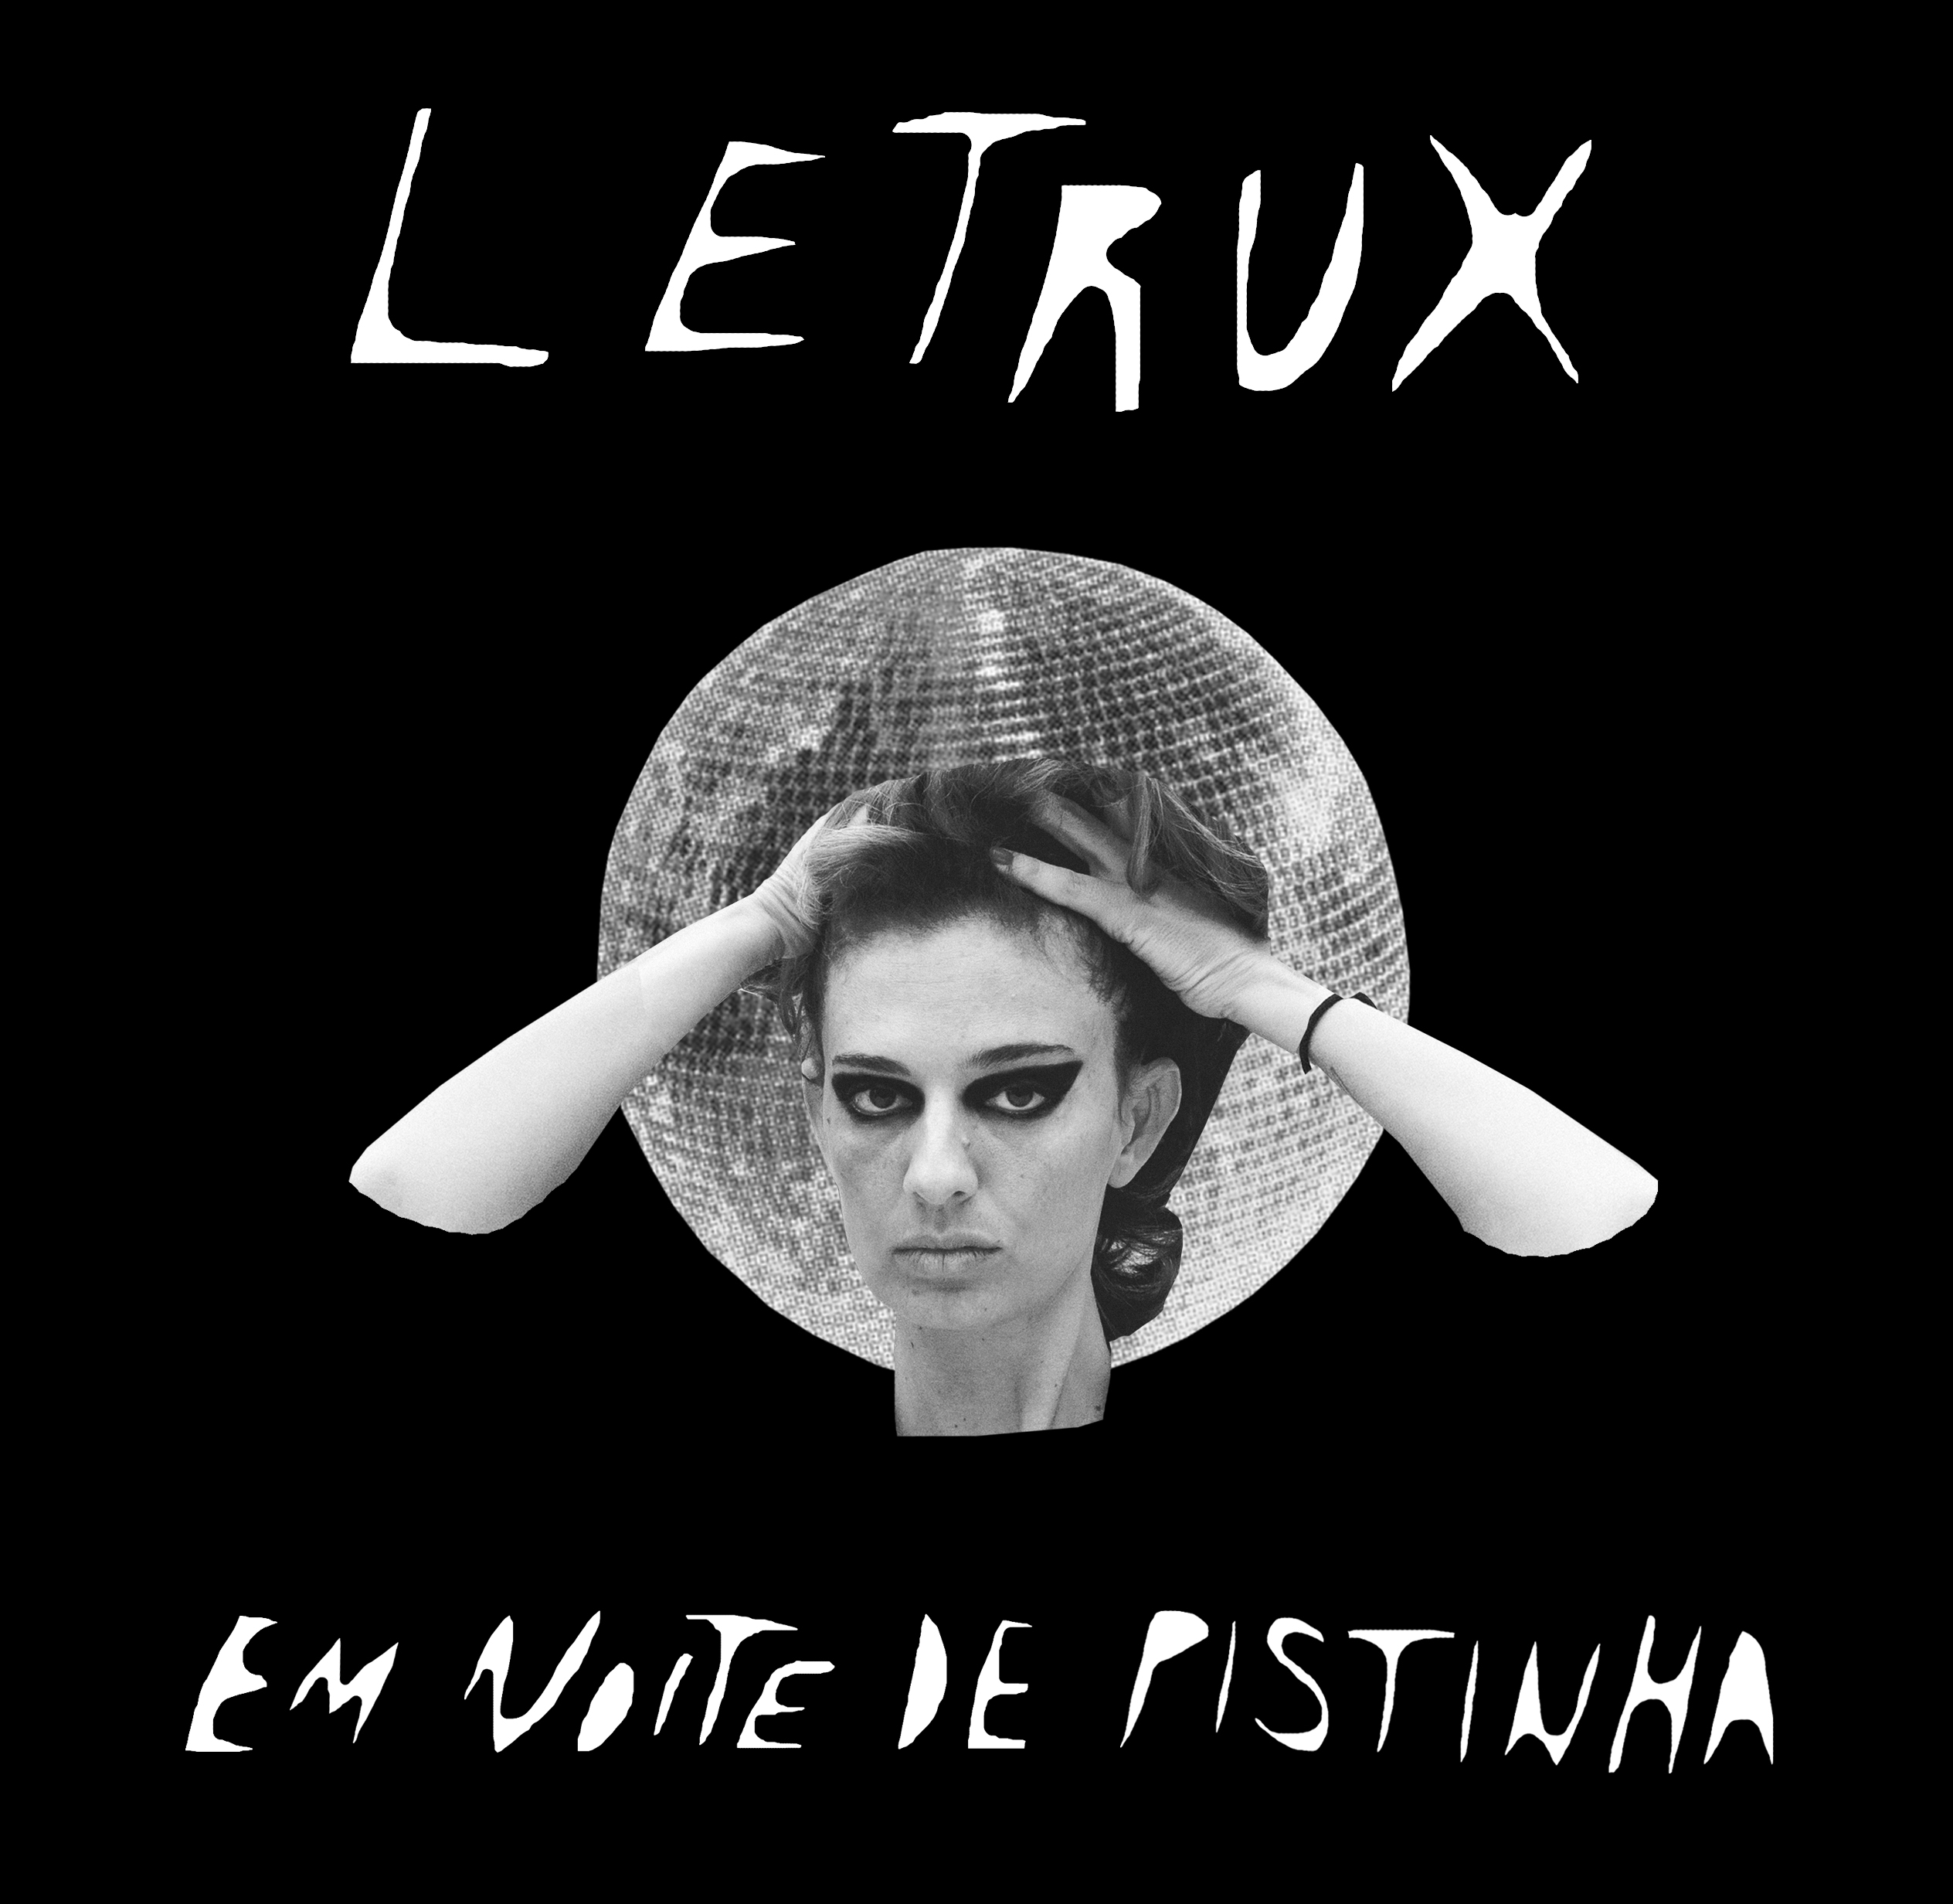 noticia Letrux lança “Em noite de pistinha” 